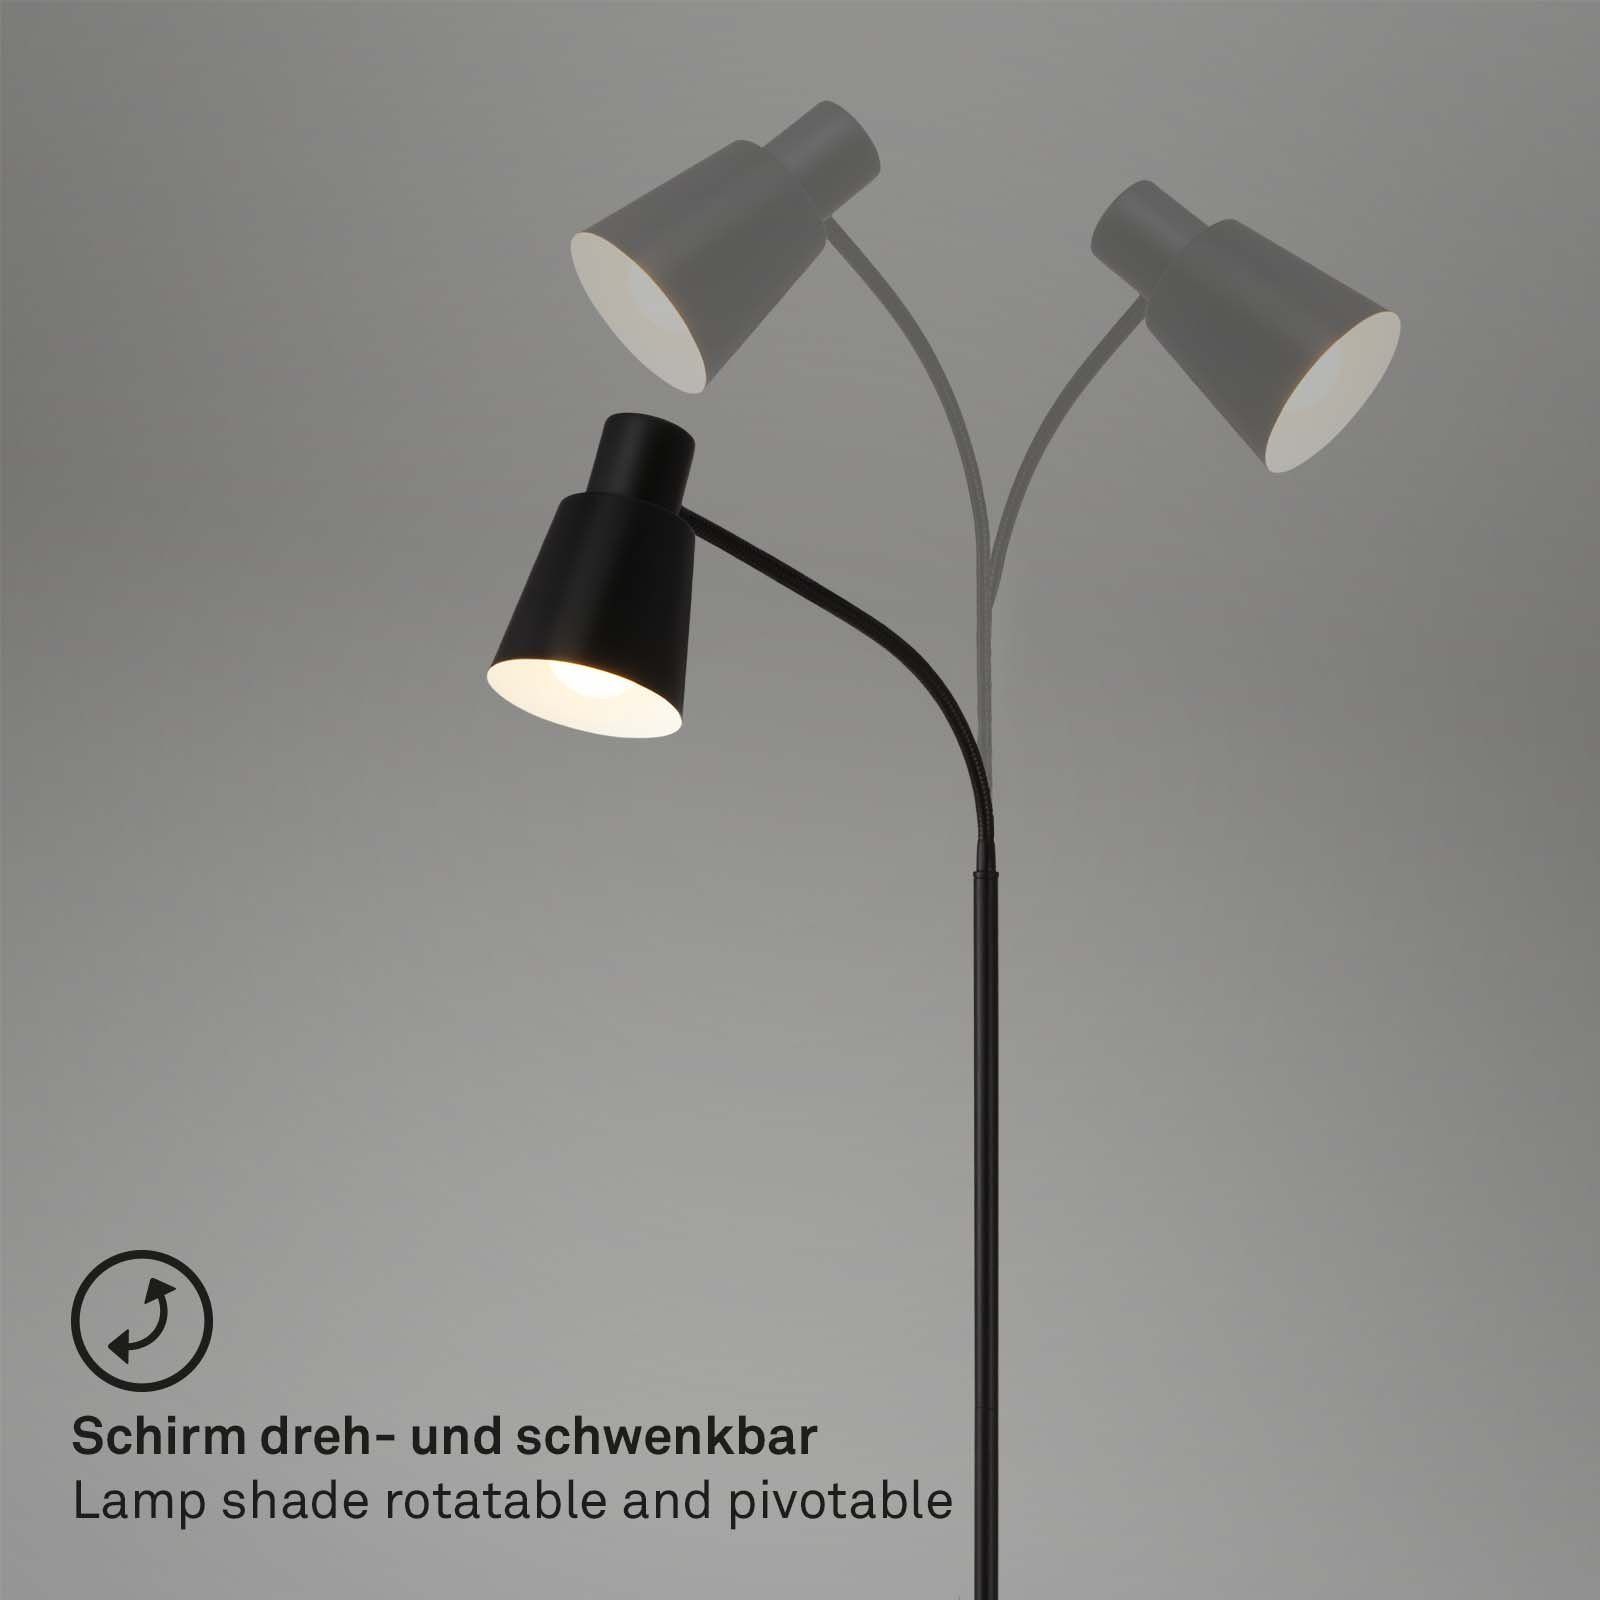 LED Stehlampe Leuchten 12 10W, 1 x max. wechselbar, cm 1474015, E27 exkl. IP44, Badezimmer, weiß, Briloner